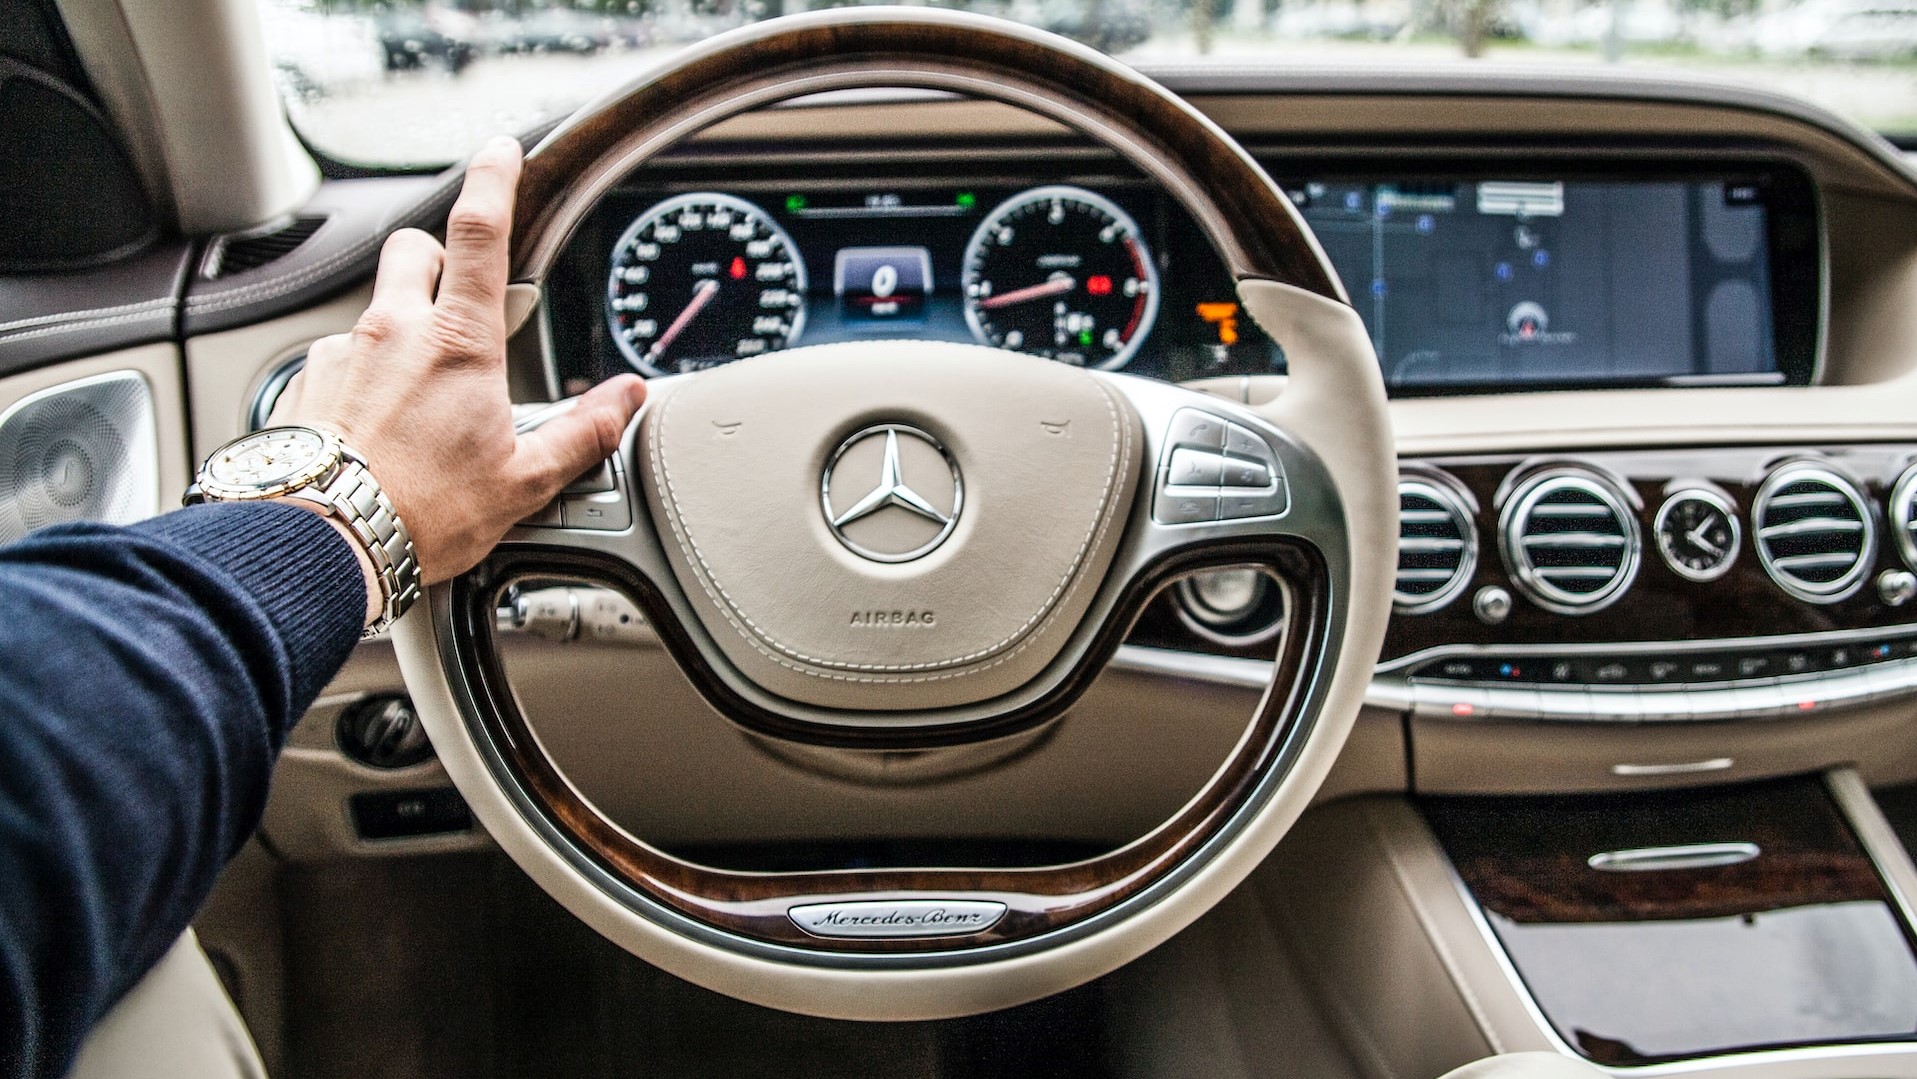 Driving a Mercedes | Goodwill Car Donations